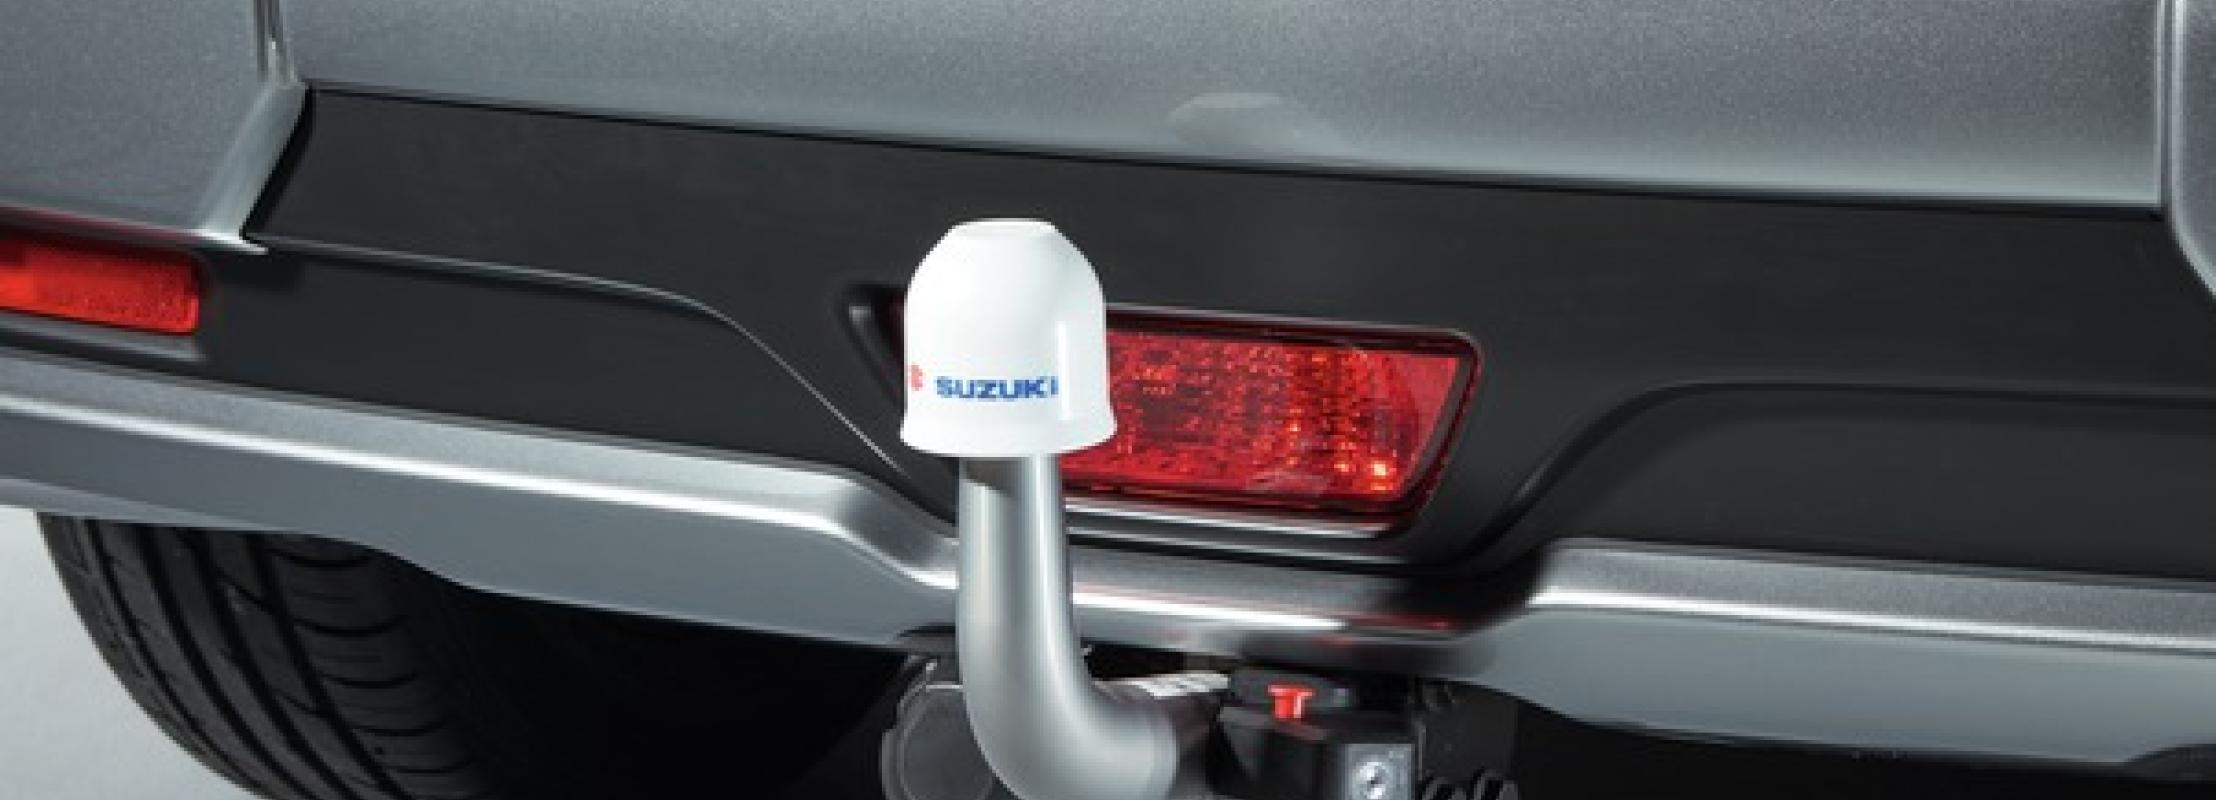 Wat maximale trekgewicht van auto? | Suzuki